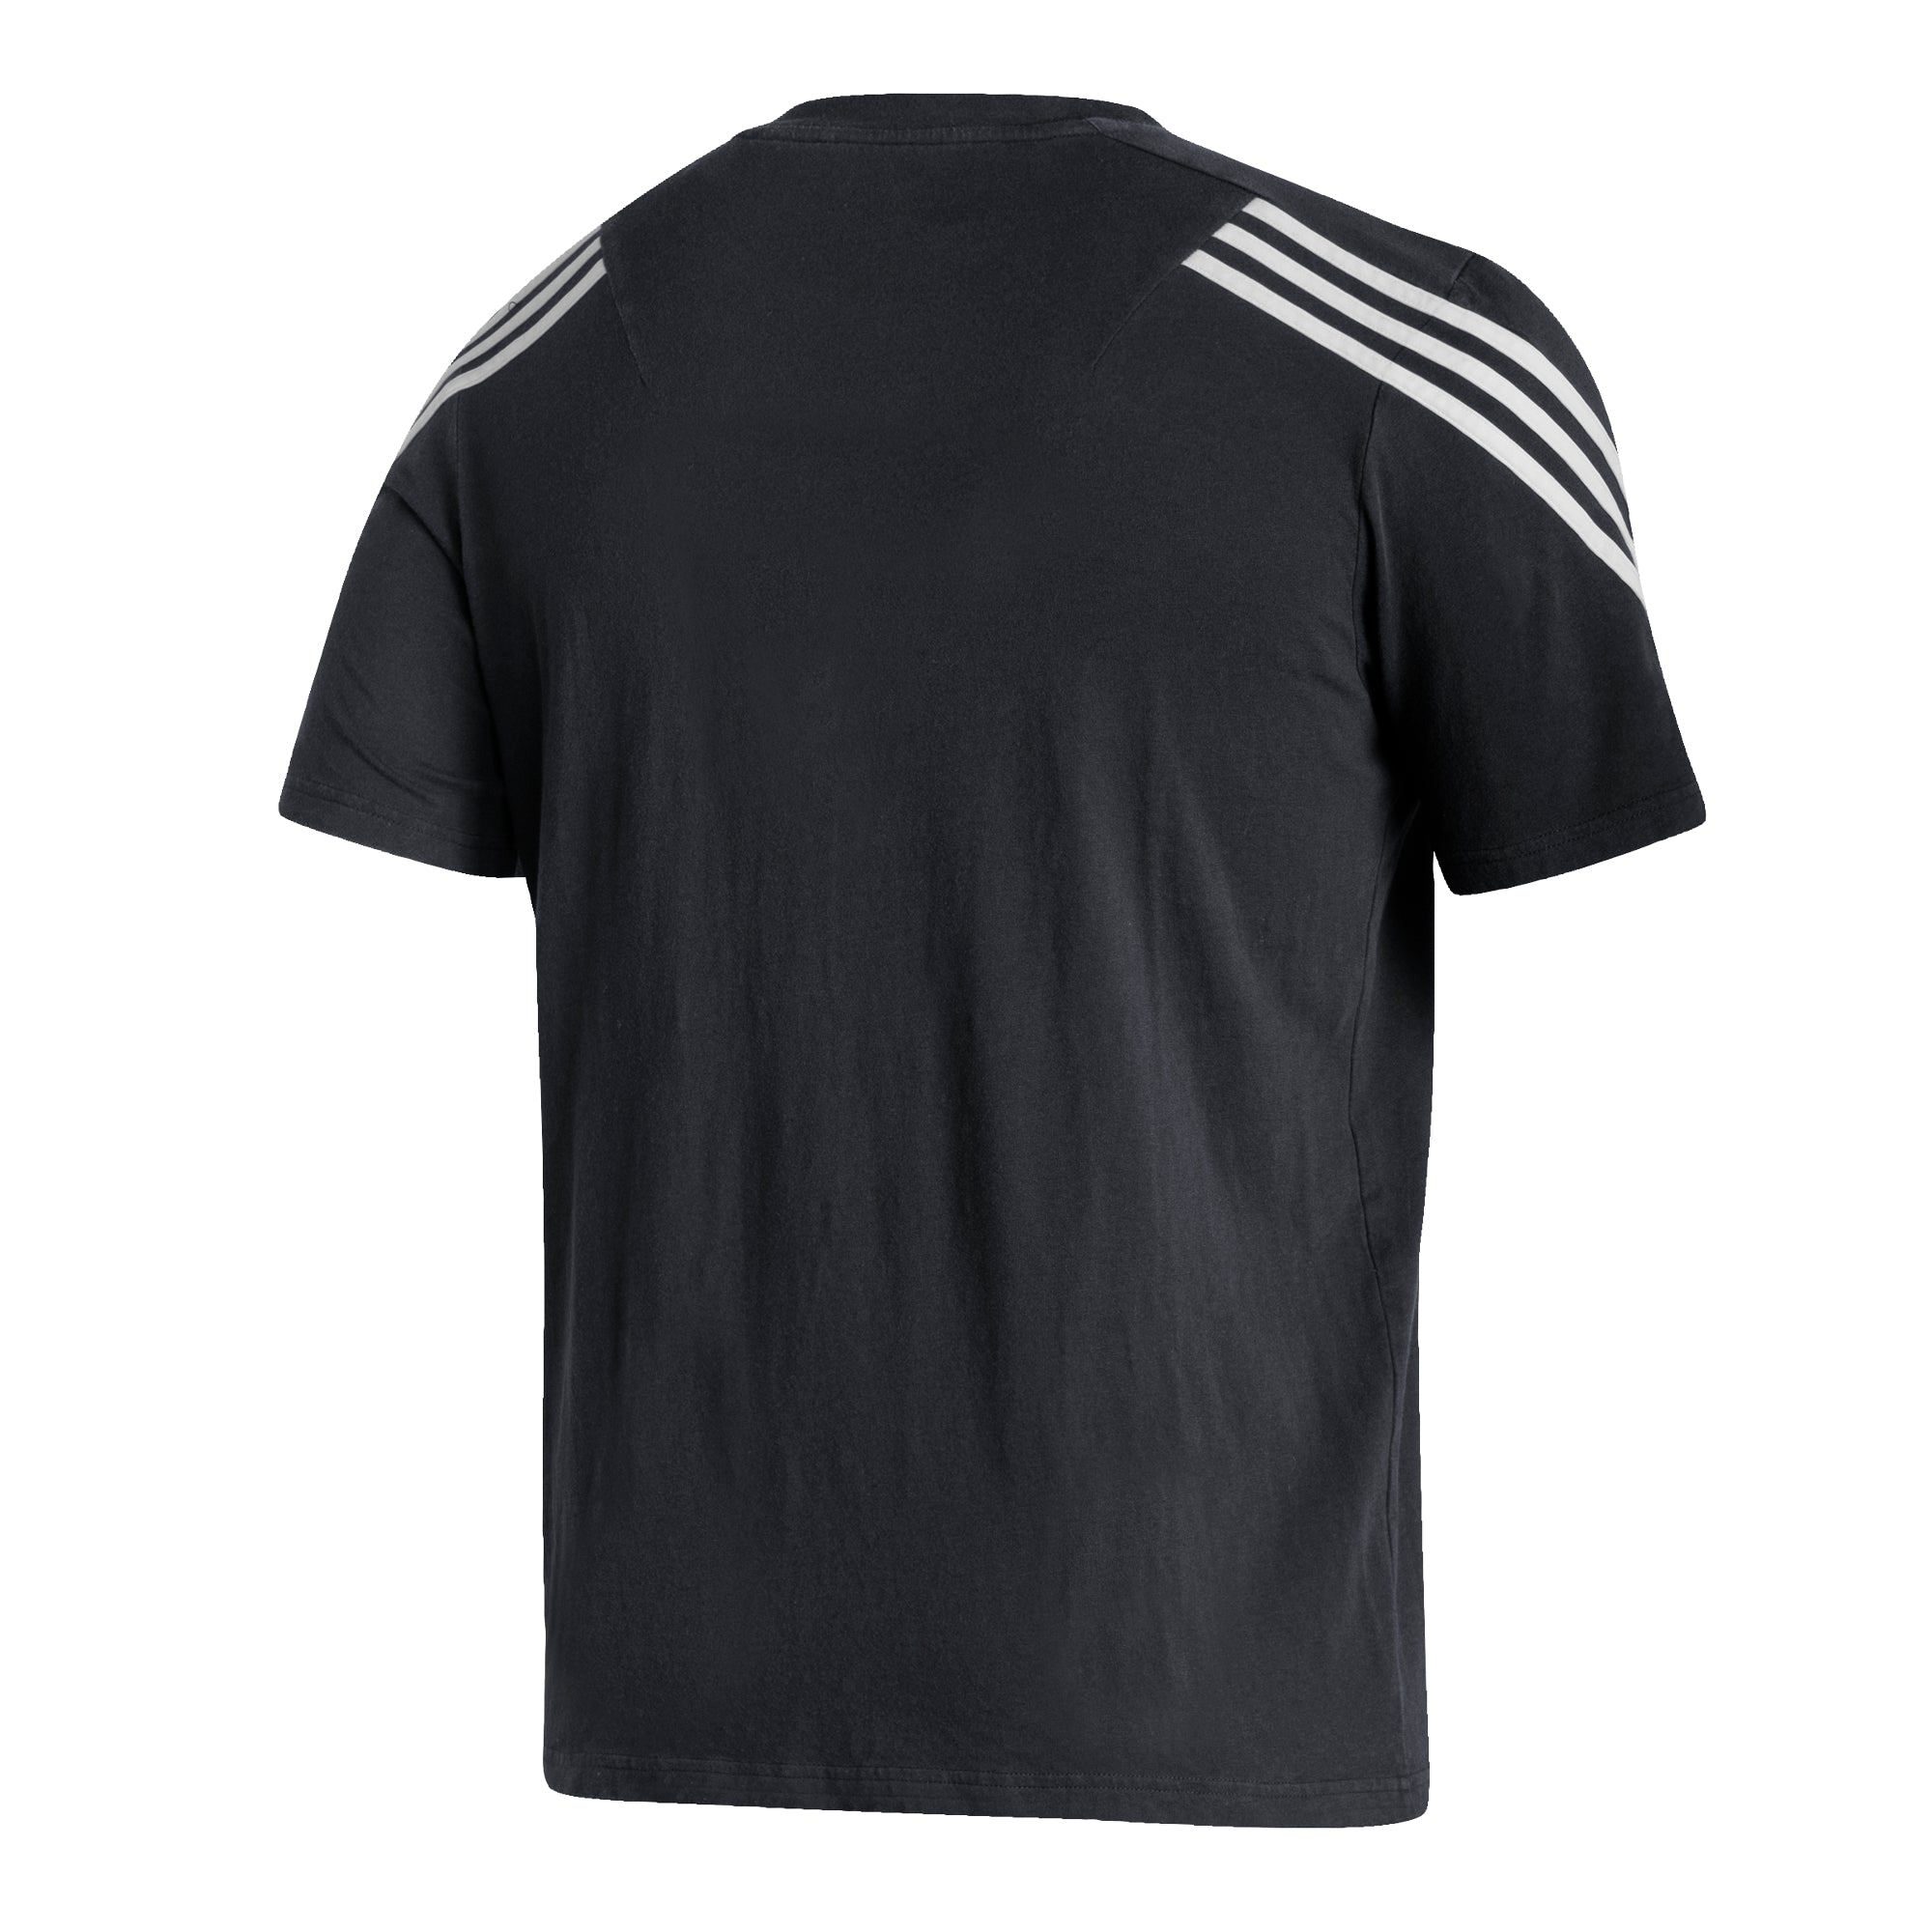 Miami Hurricanes adidas 3-Stripe Fashion T-Shirt - Black